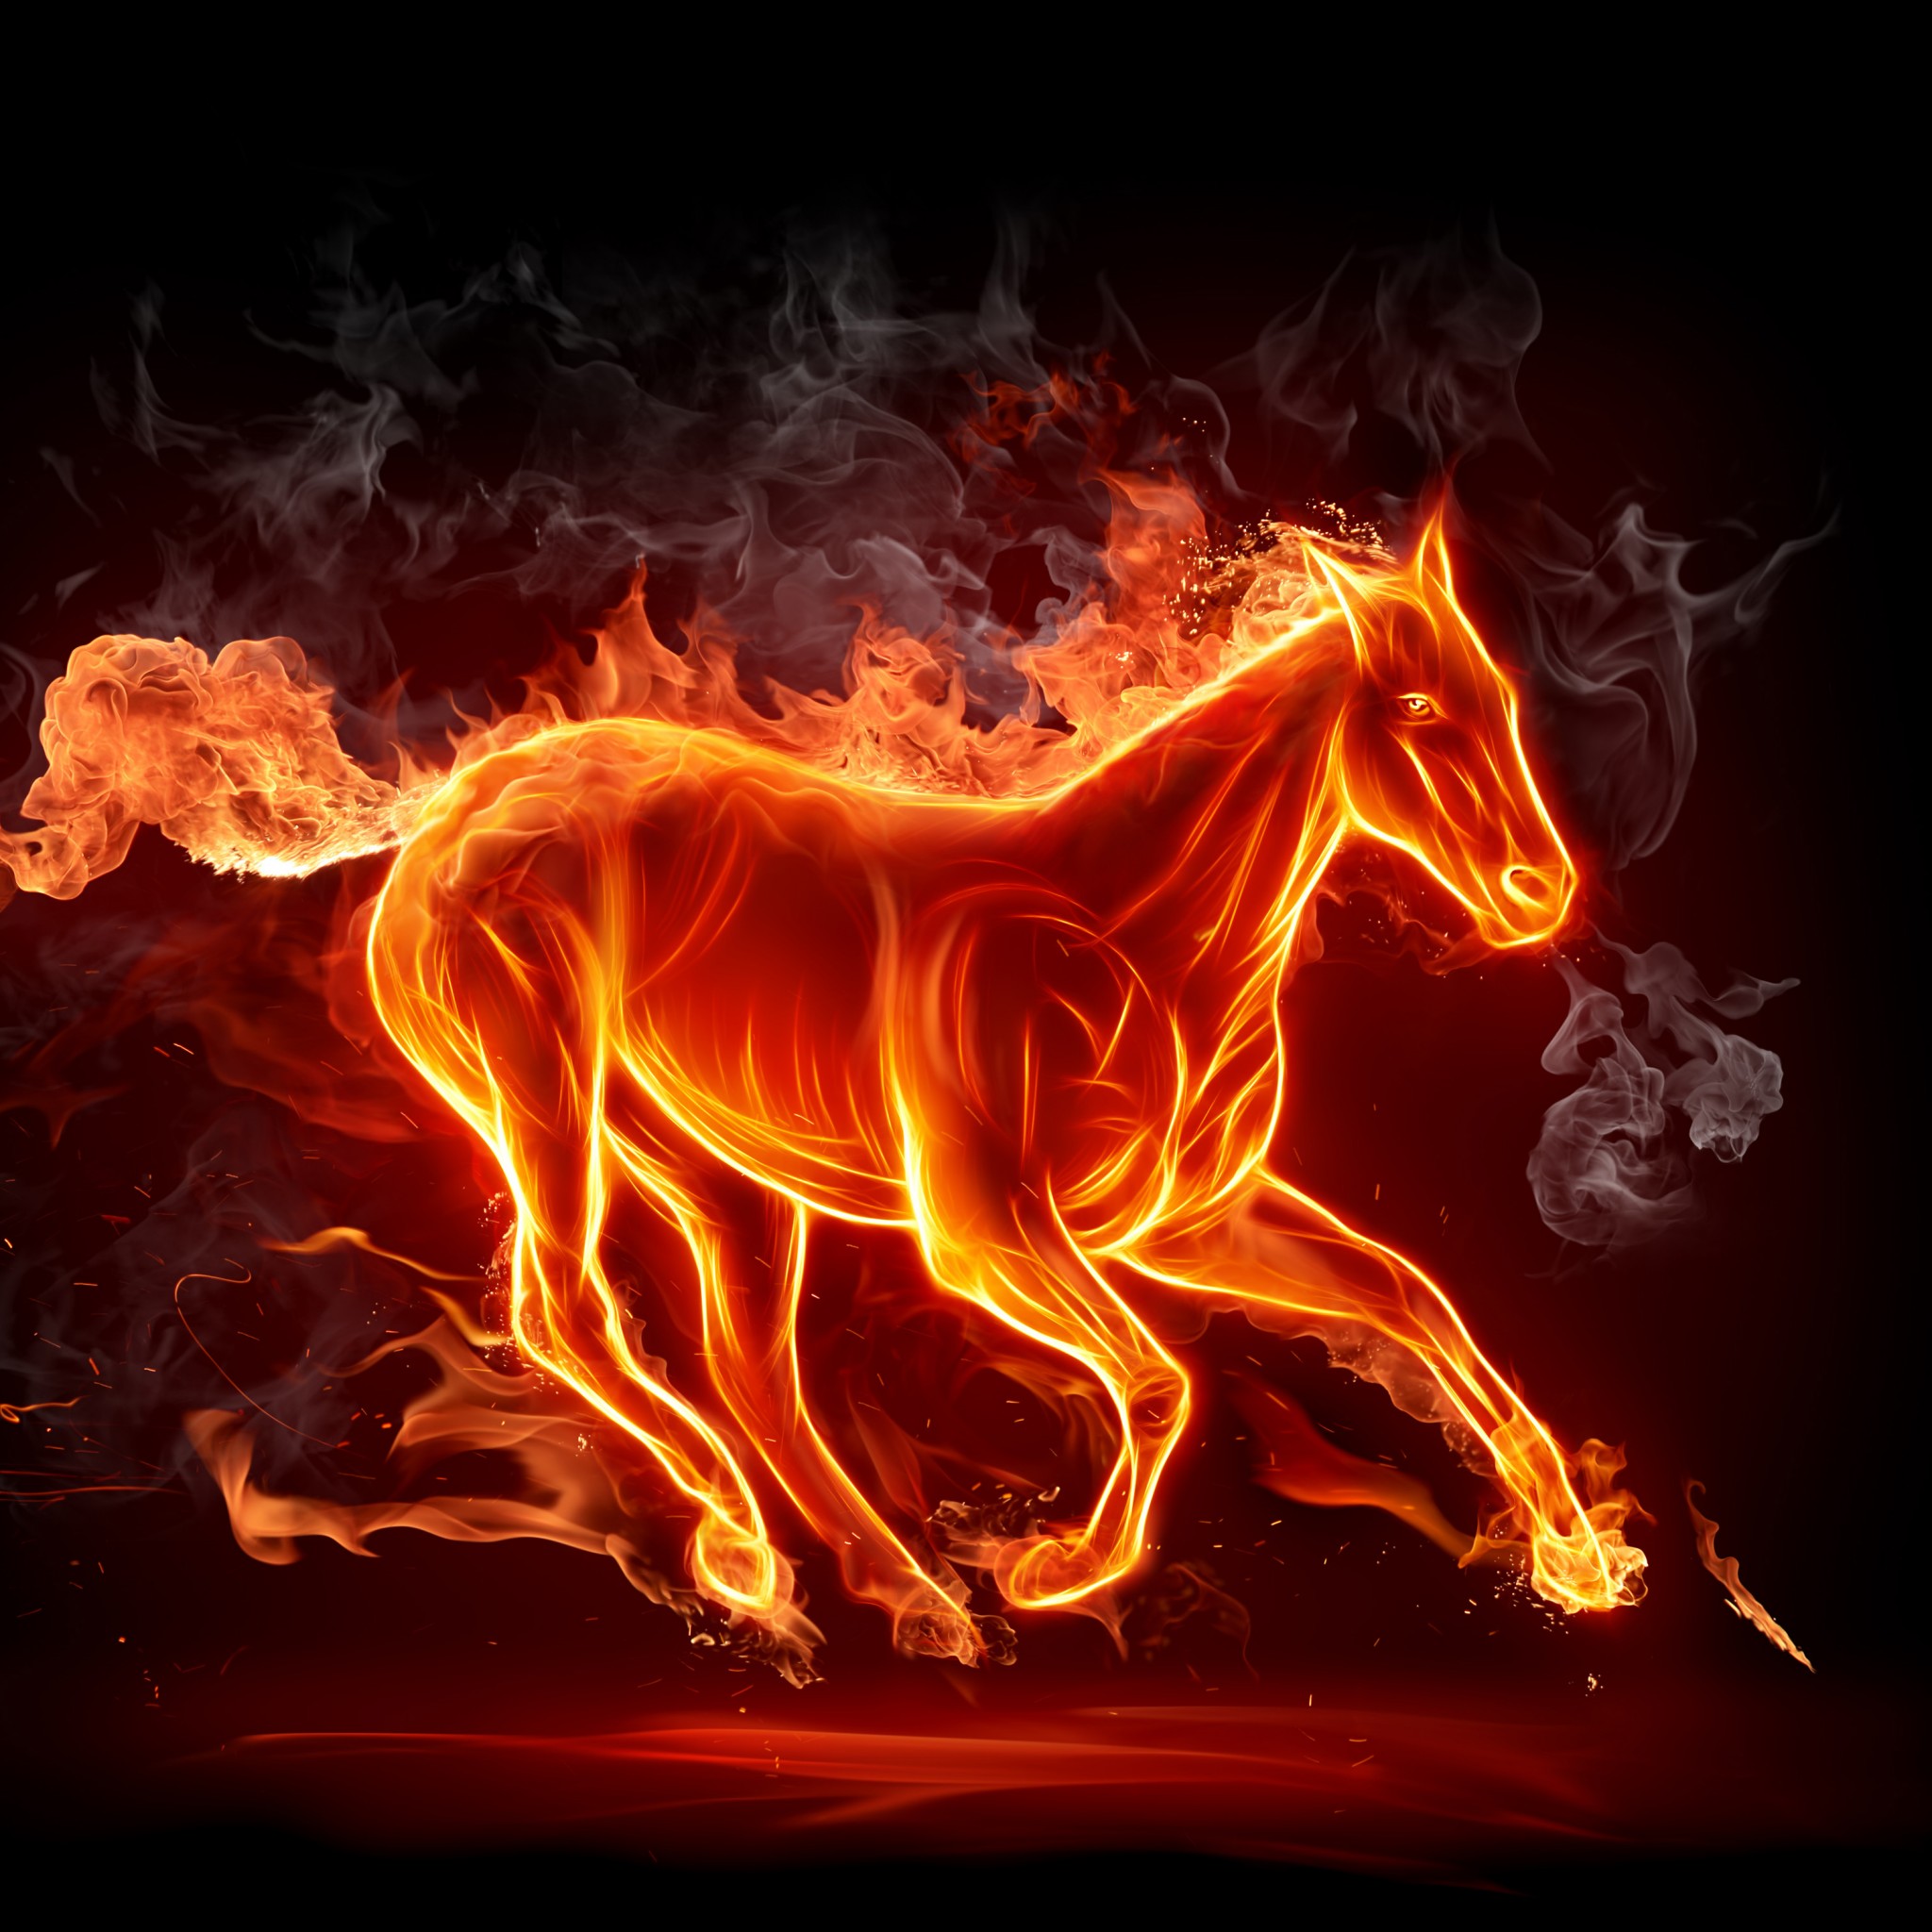 Digital Art Fire Horse 3d Desktop Hd Wallpaper Wallpapers